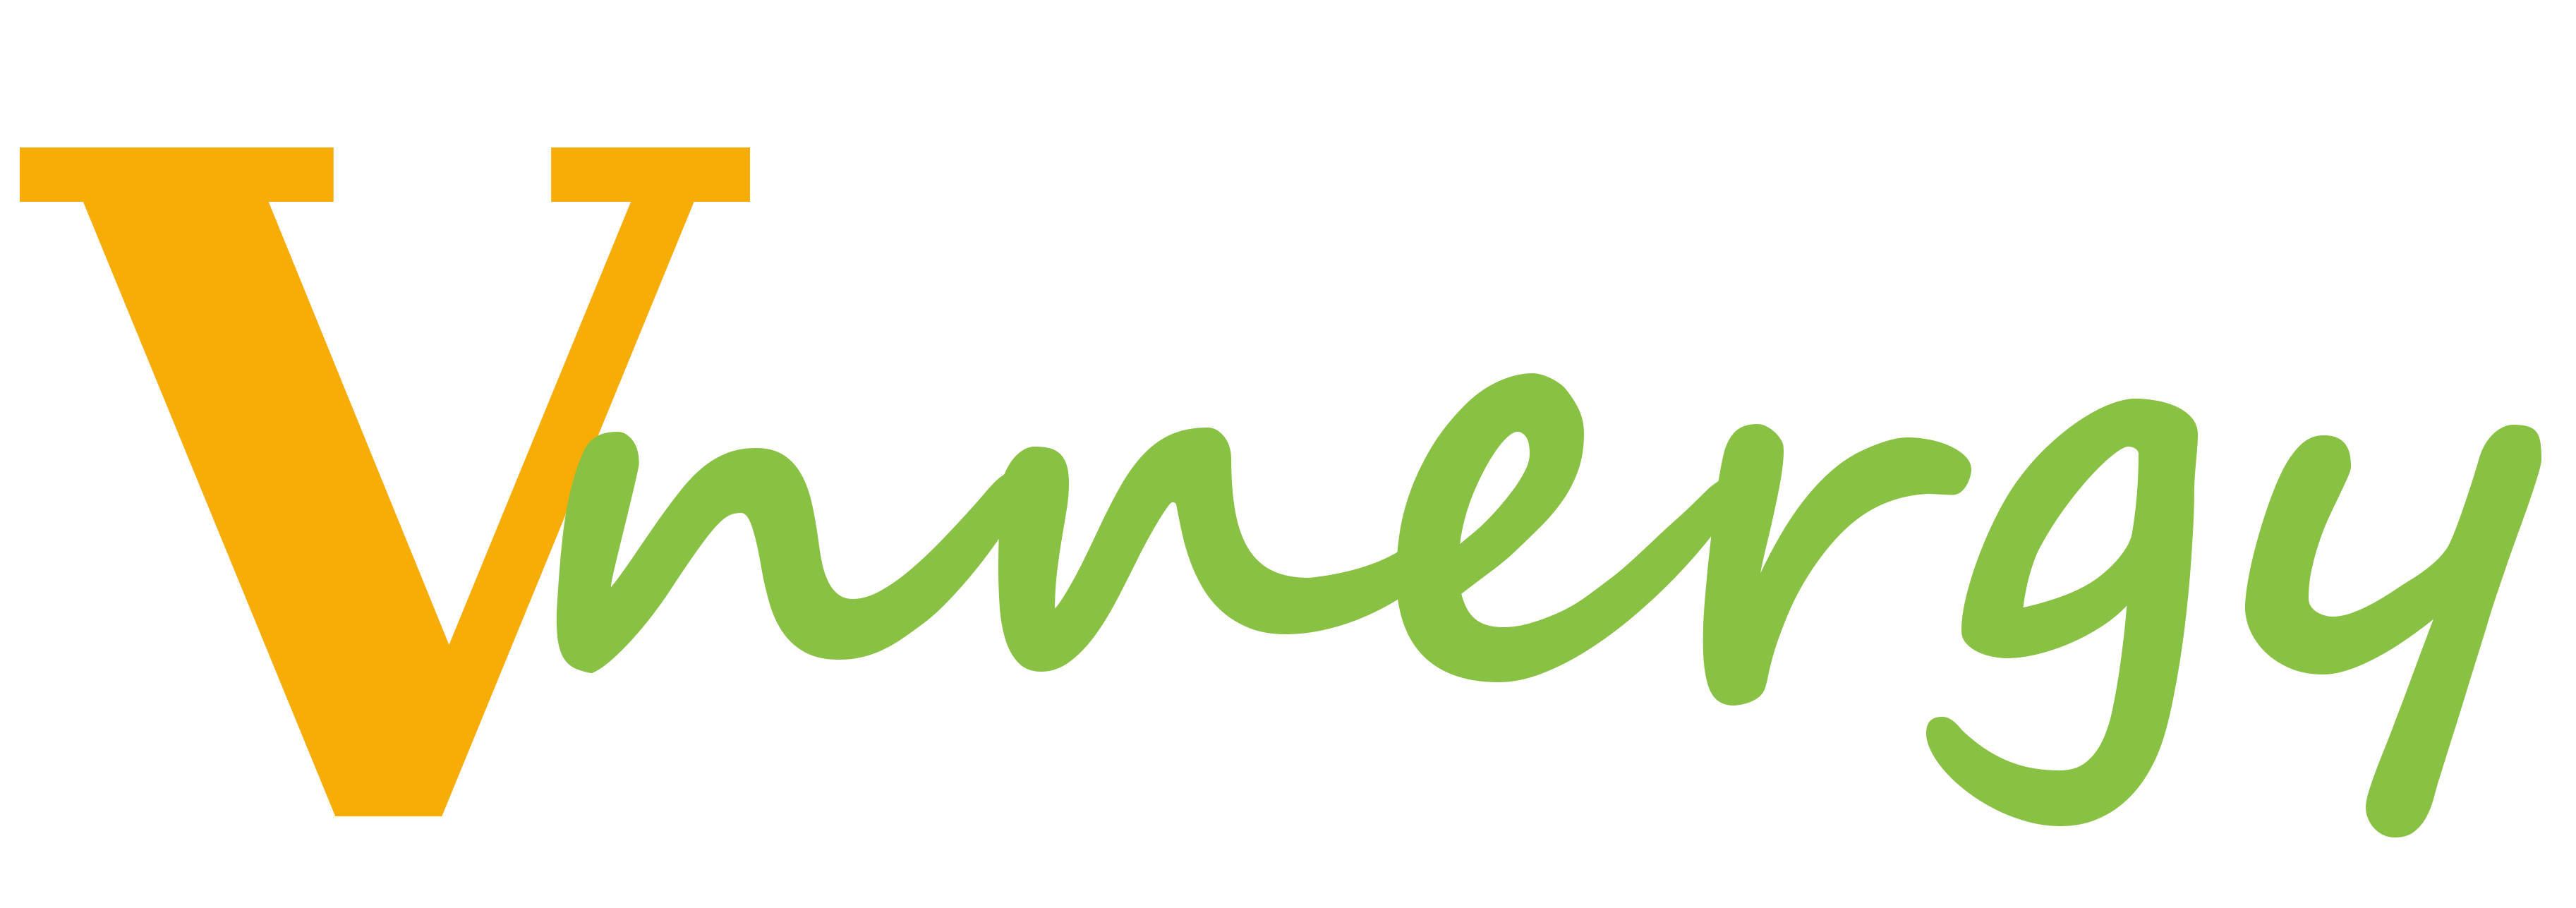 vnnergy-logo